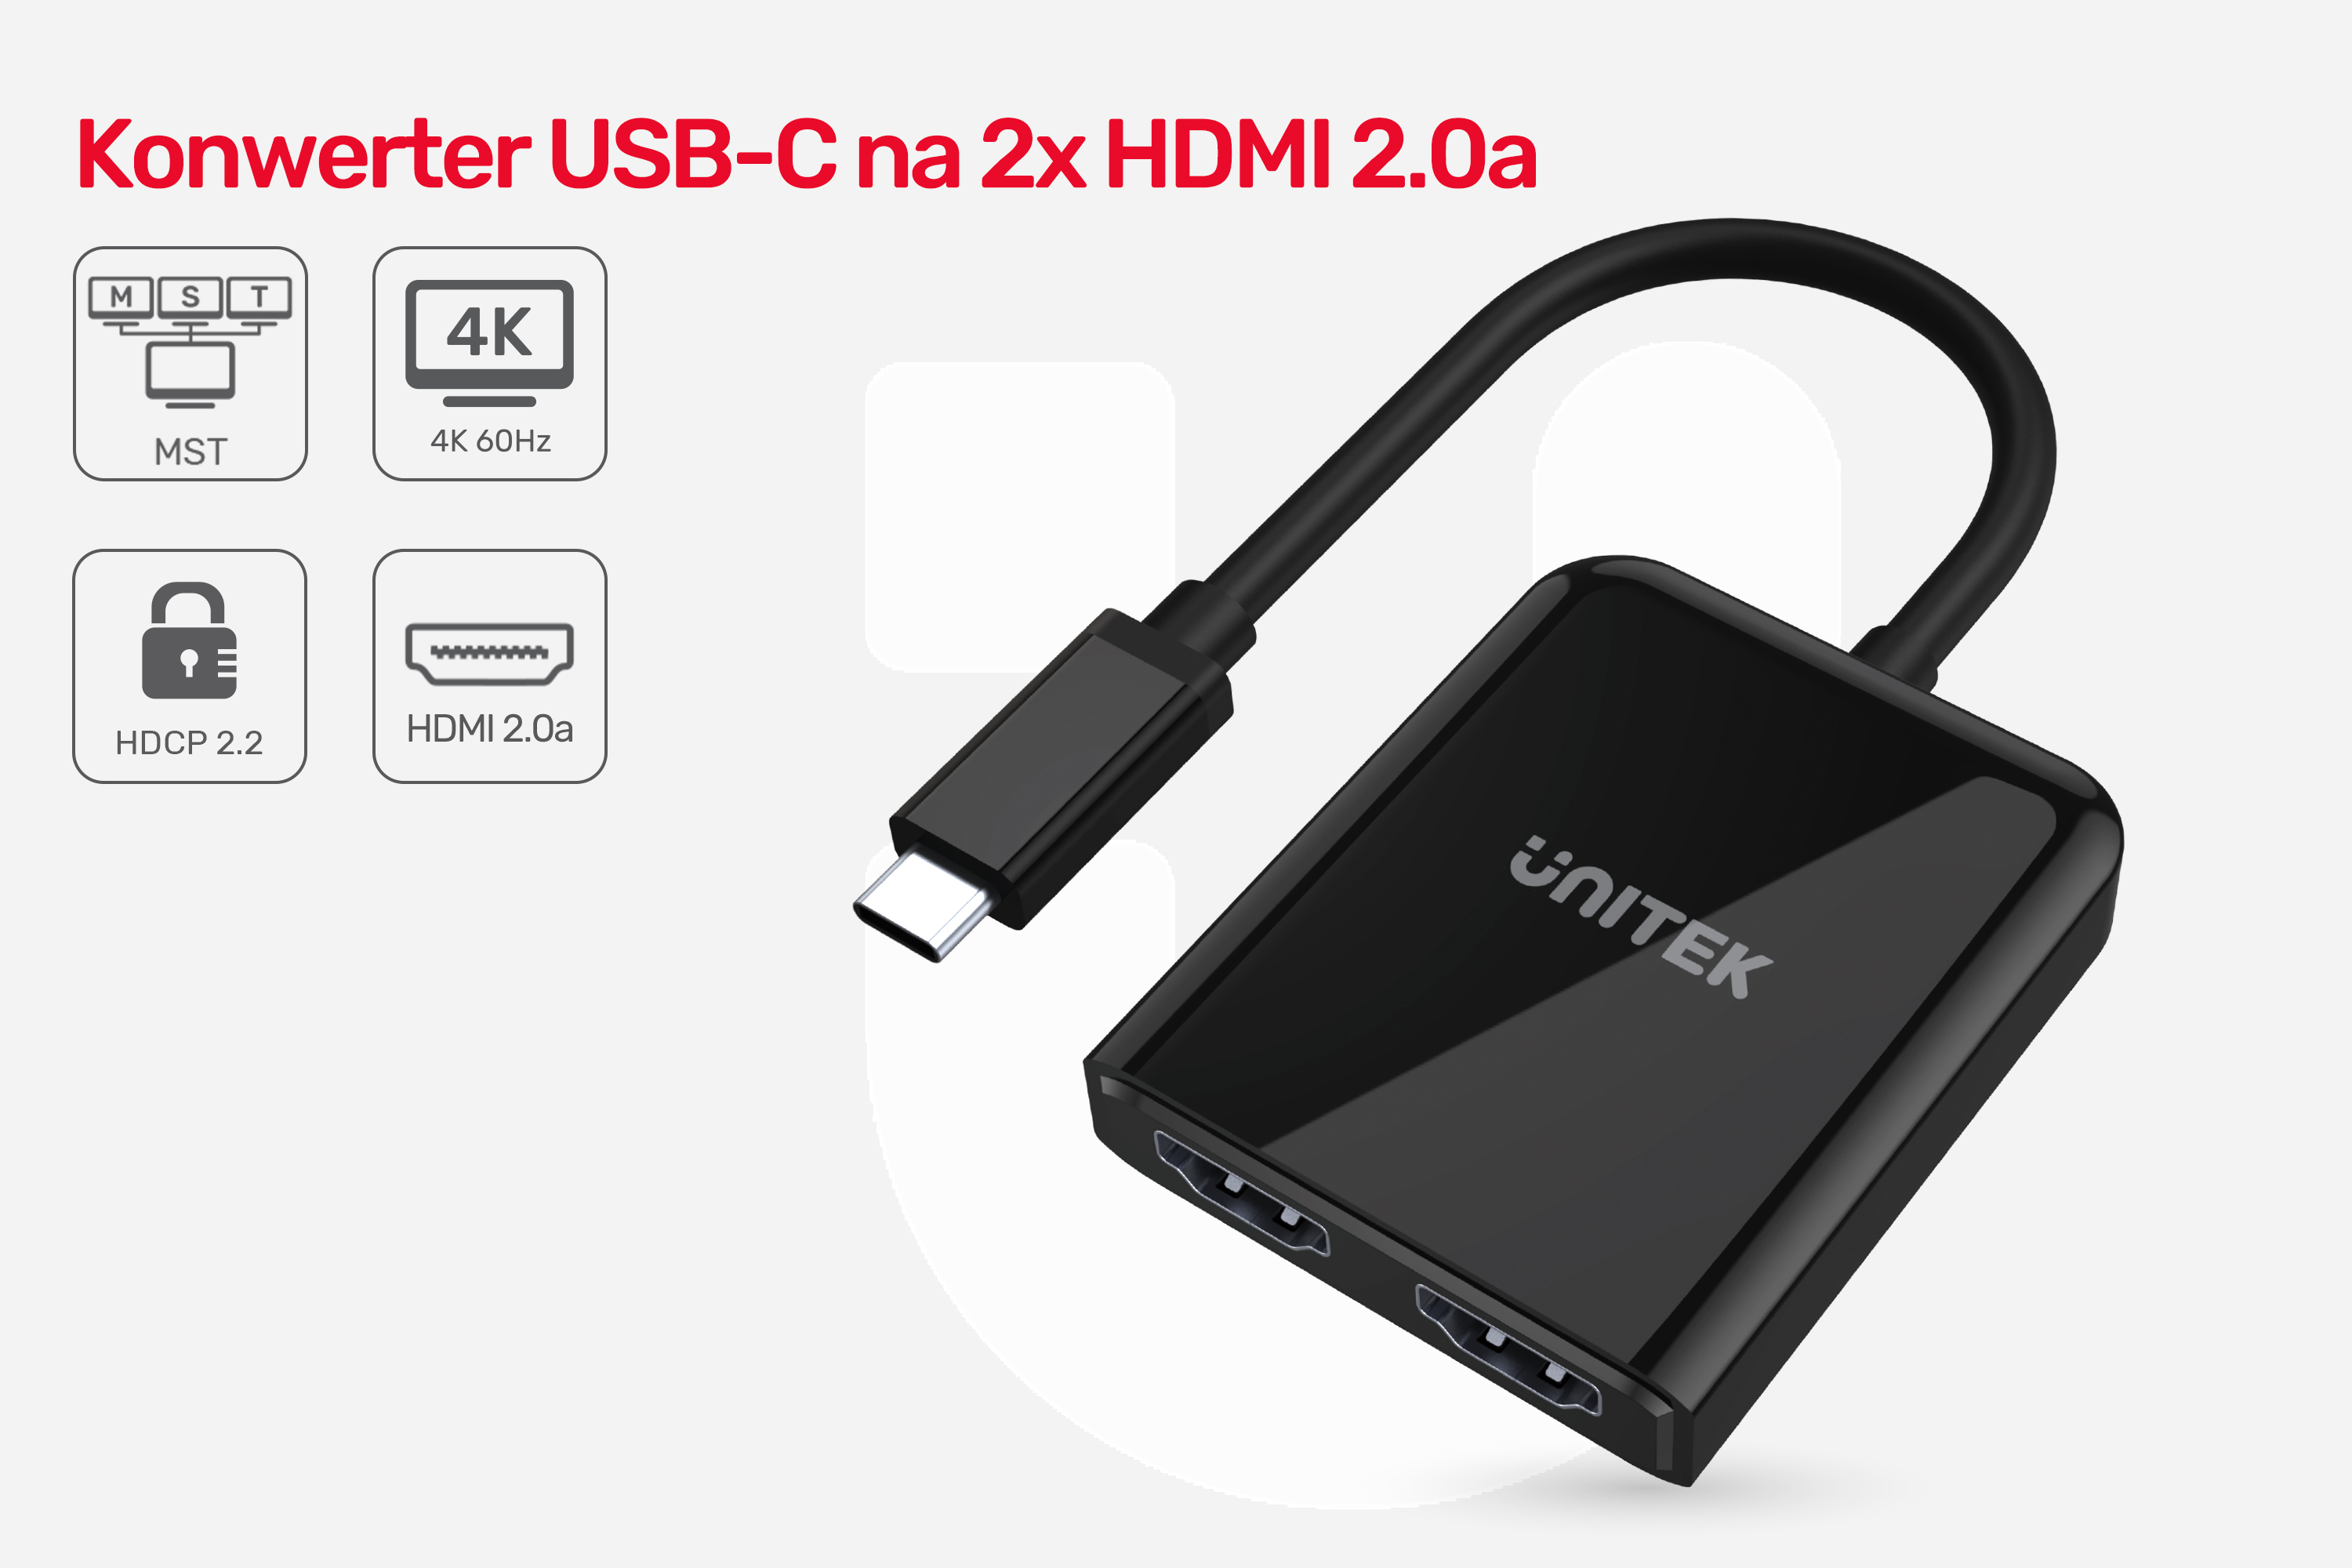 Konwerter USB-C dwa porty HDMI